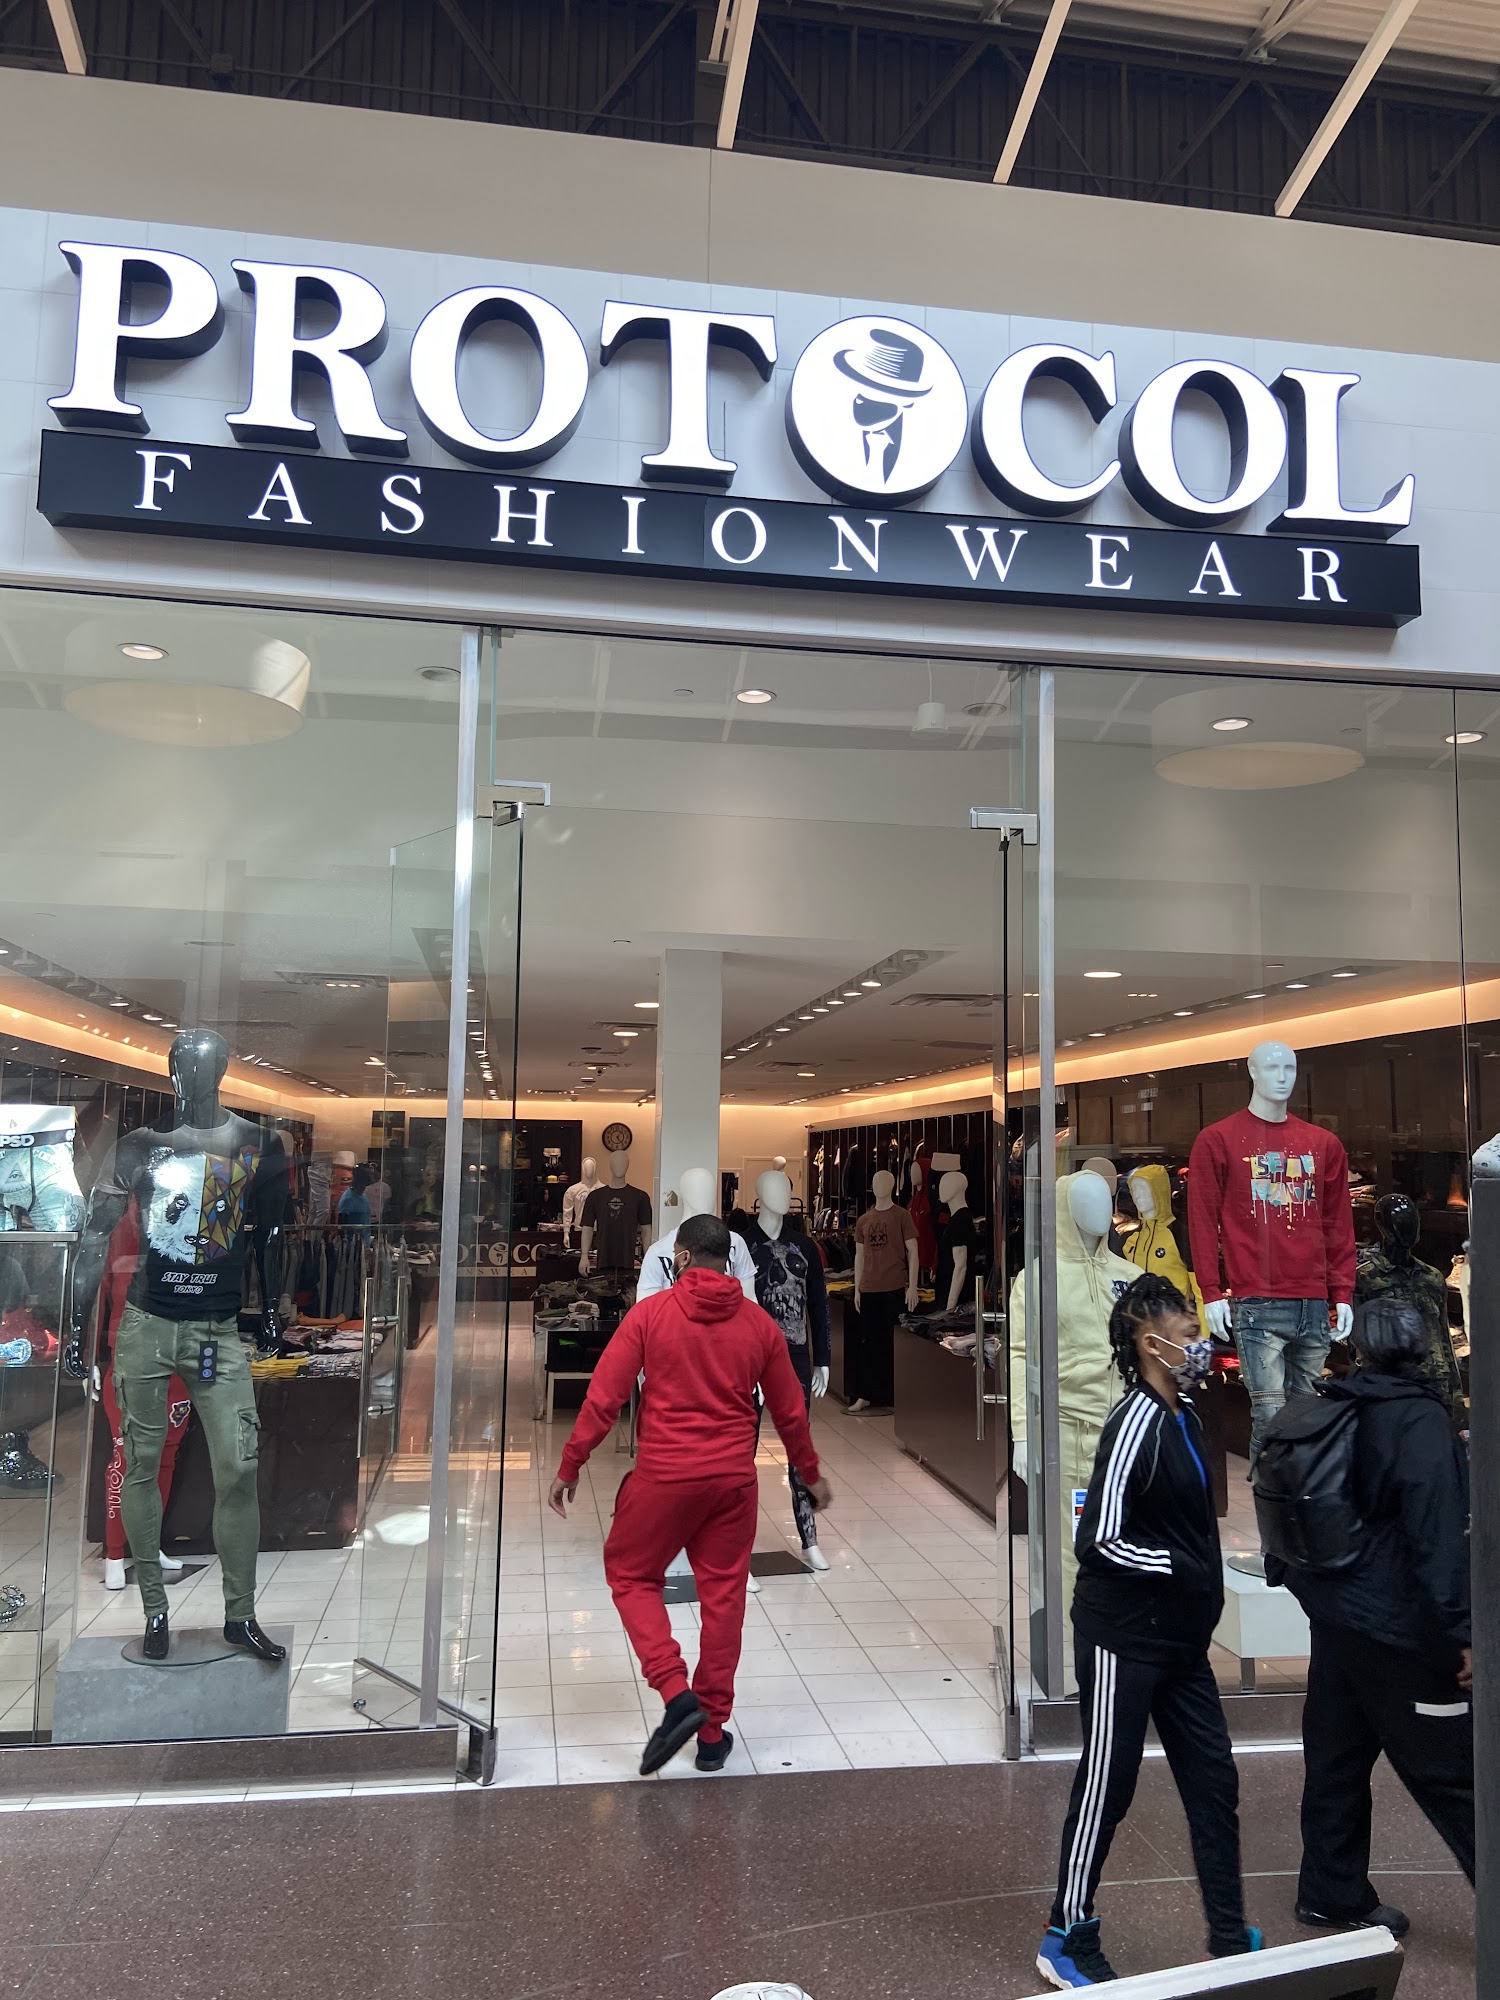 Protocol Fashionwear